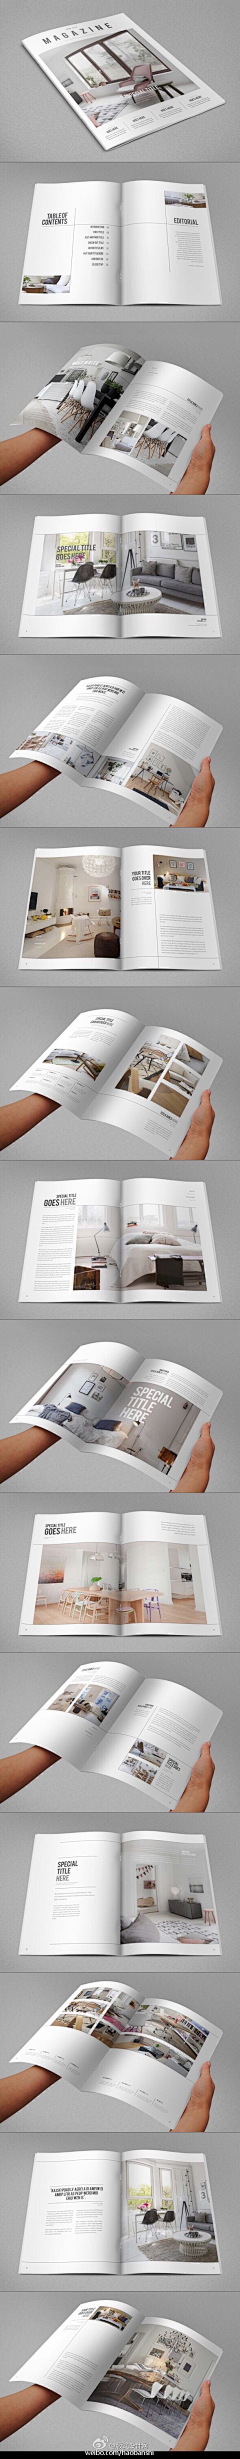 千城设计师采集到杂志画册